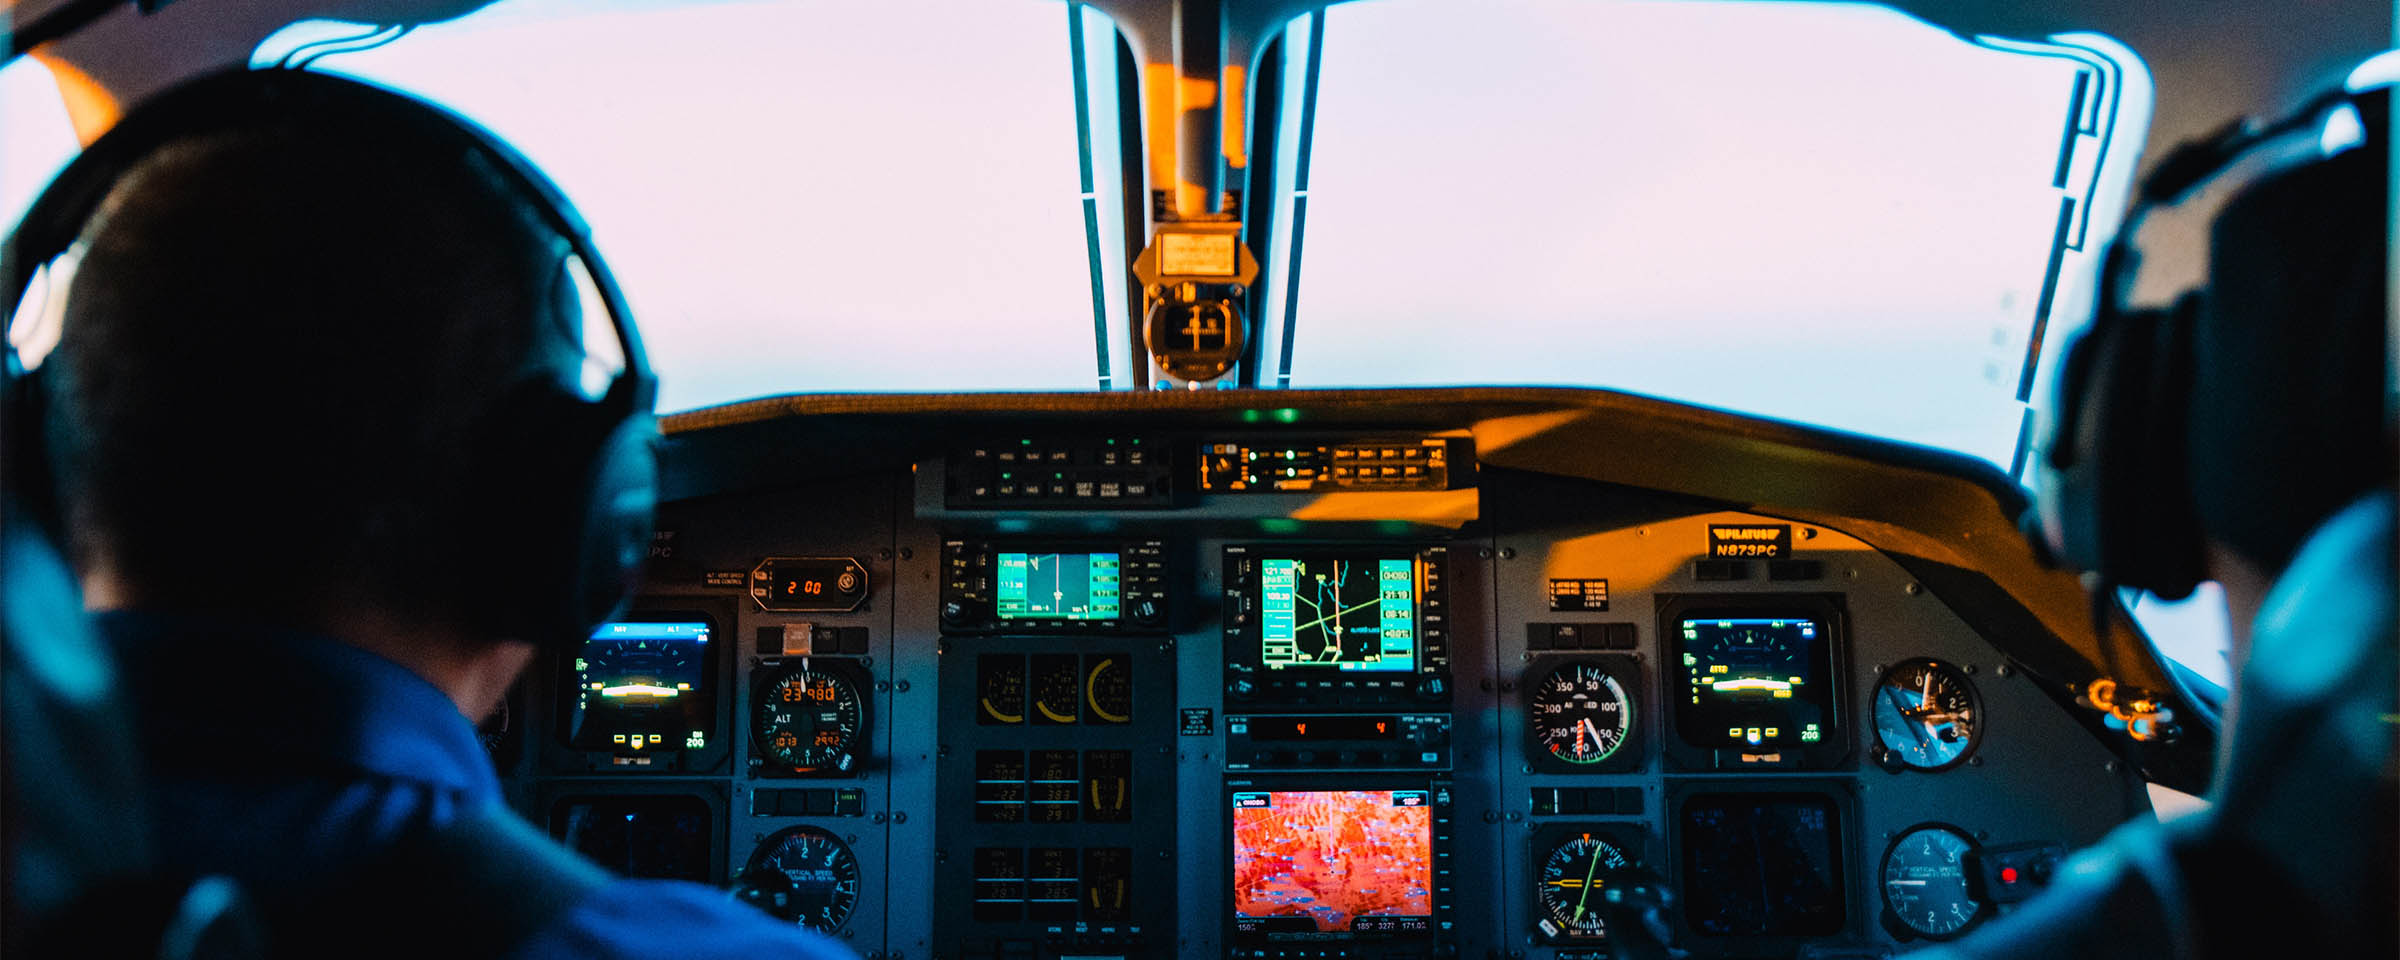 Cockpit of an aircraft